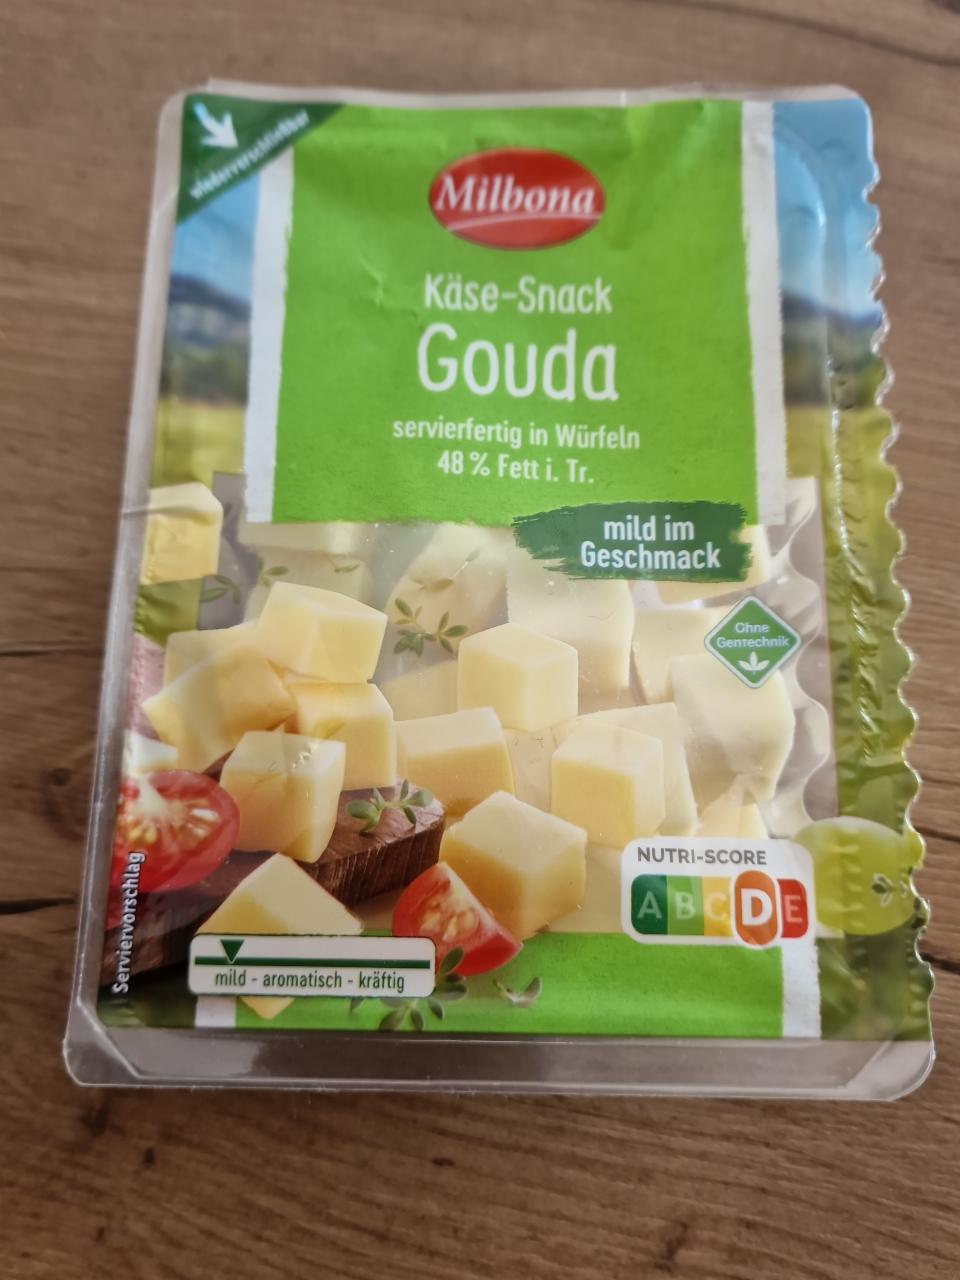 Fotografie - Käse-Snack Gouda Milbona